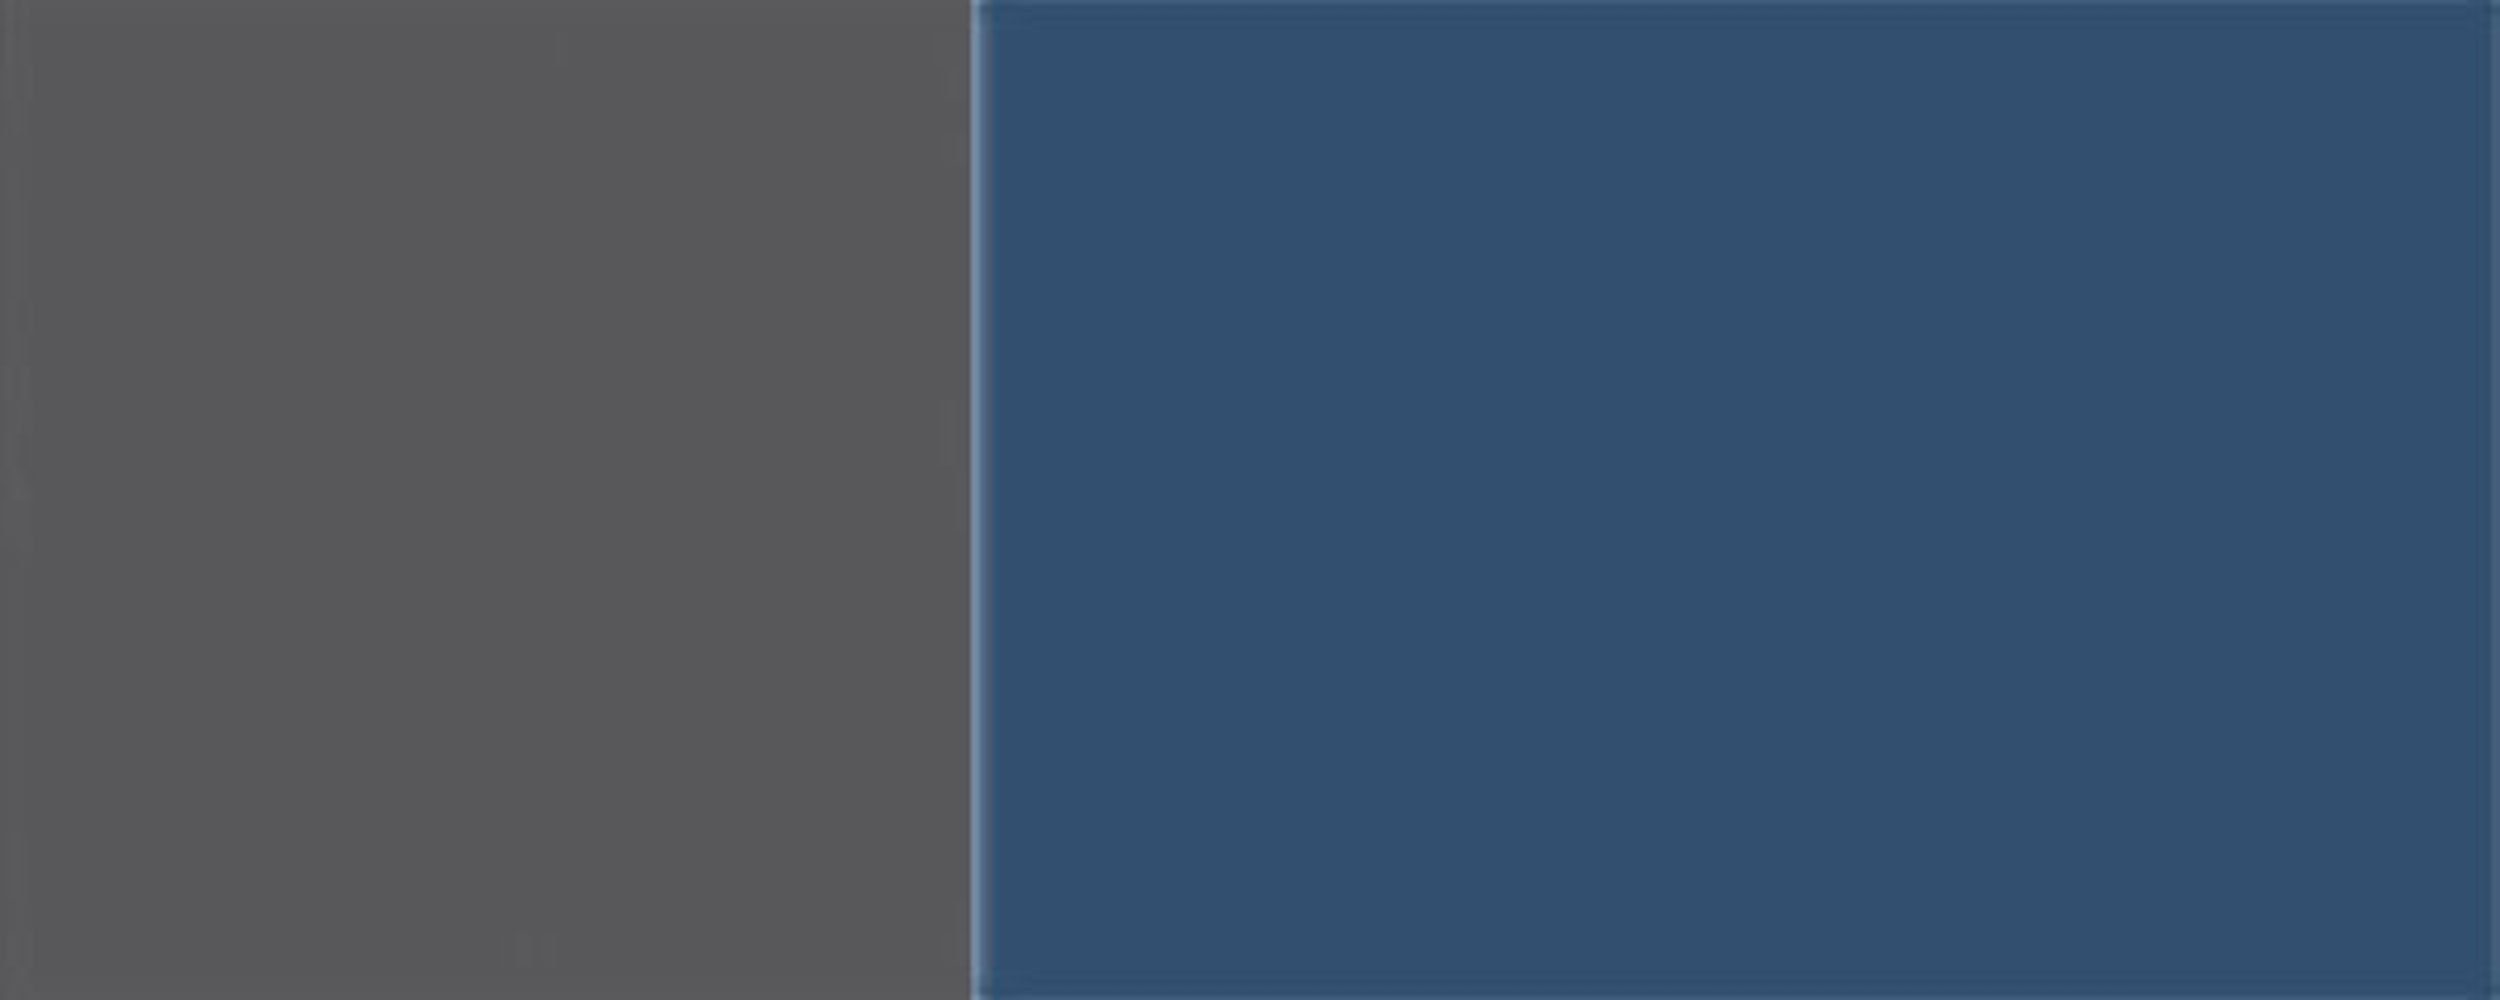 (Napoli) 1-türig RAL 5000 Feldmann-Wohnen wählbar Front-, Korpusfarbe Napoli Ausführung 50cm grifflos Klapphängeschrank und violettblau Hochglanz